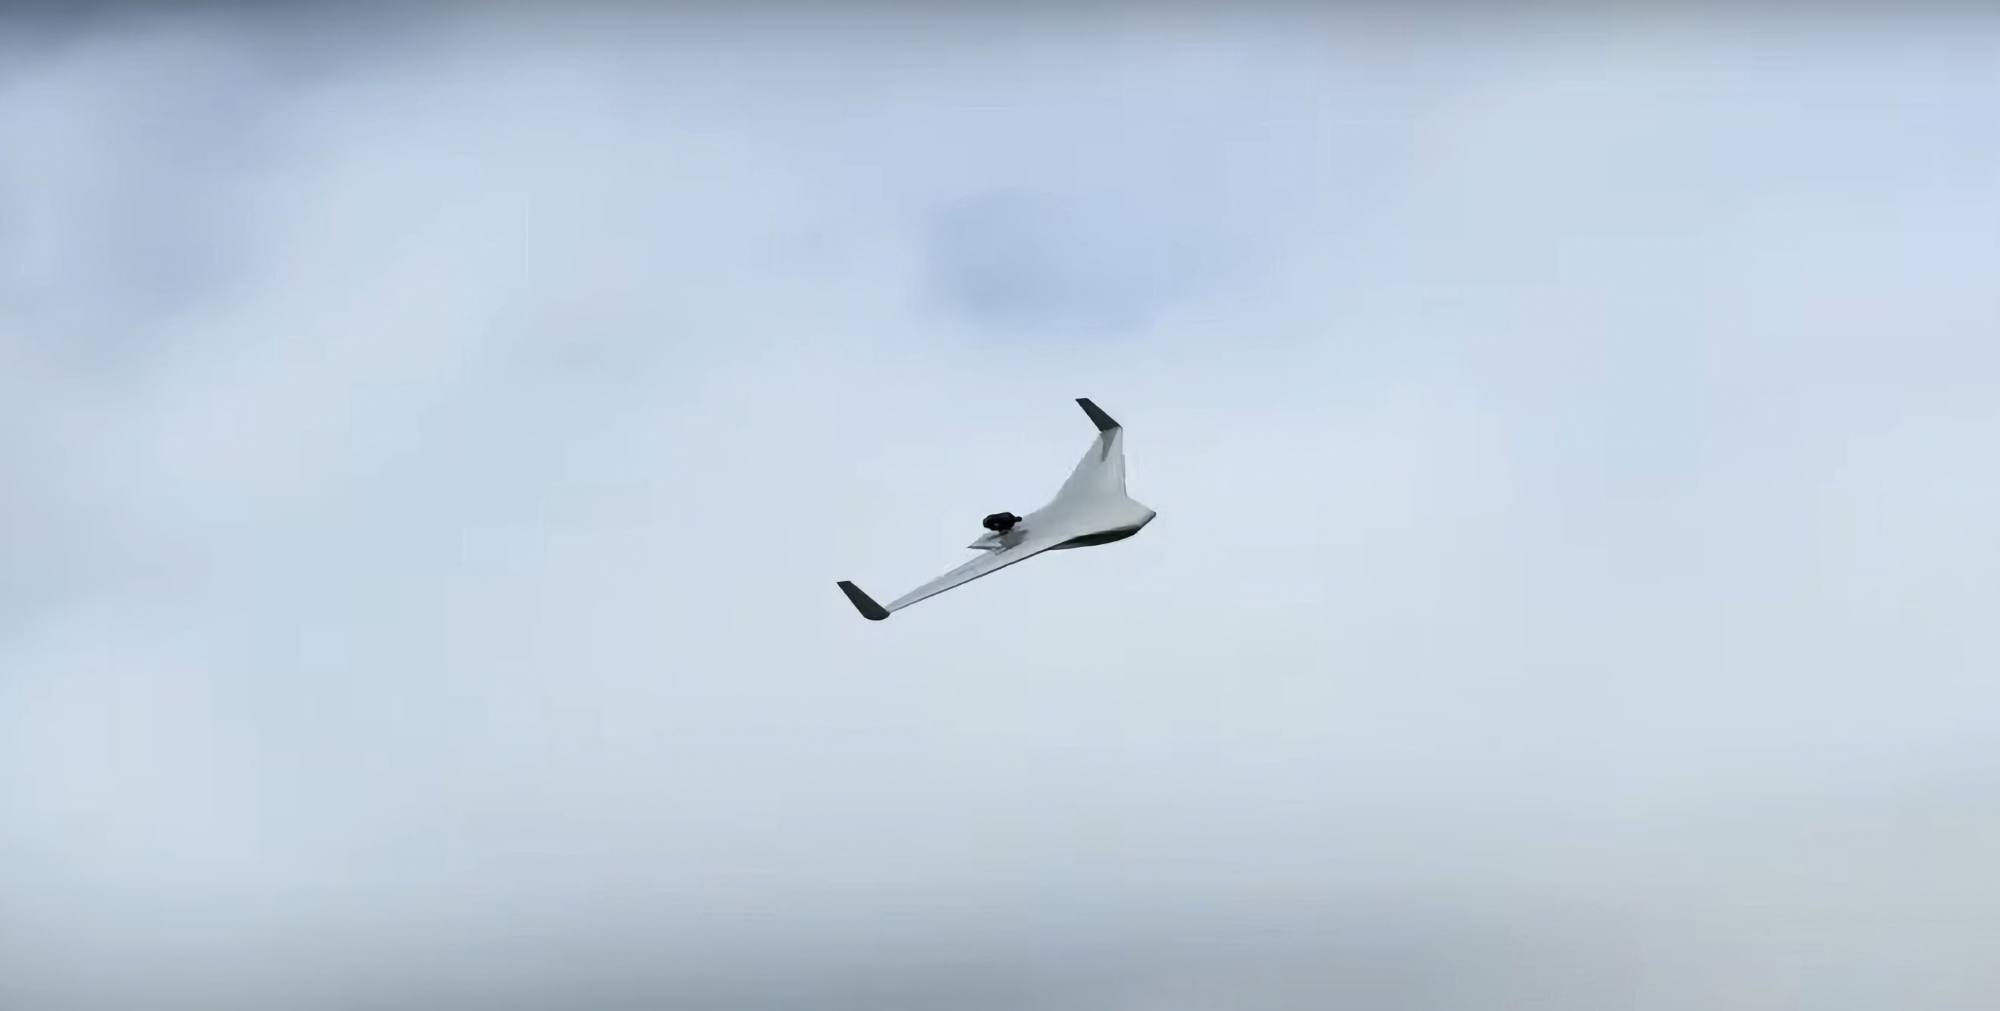 EOS Technologie ha presentato il Veloce 330: un UAV a reazione con tecnologia di decollo e atterraggio verticale che può raggiungere una velocità di 400 km/h.